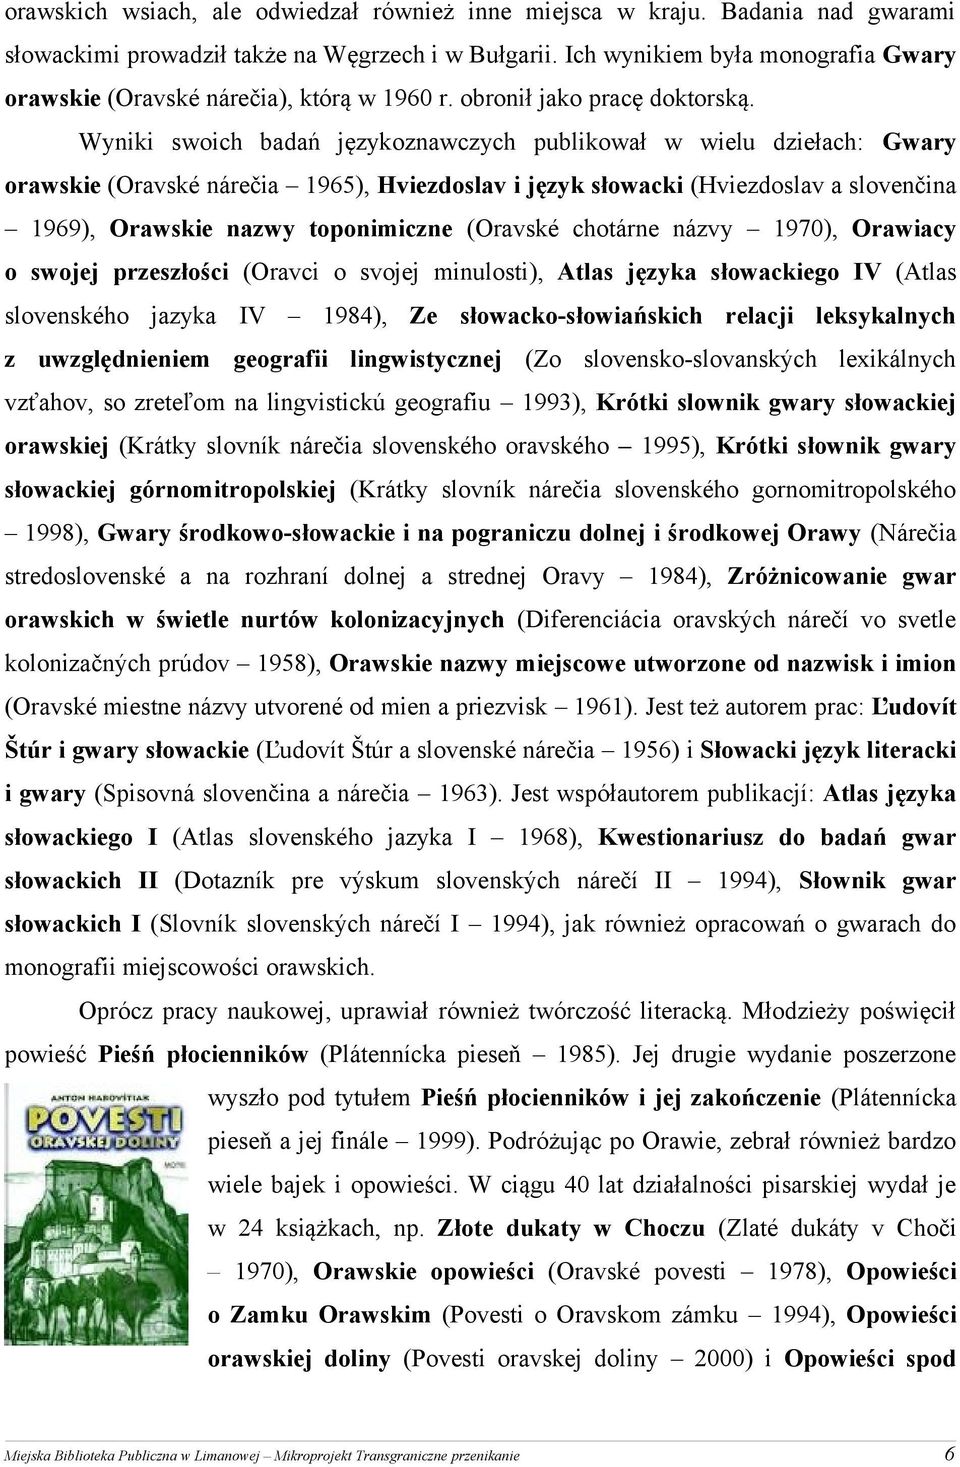 Wyniki swoich badań językoznawczych publikował w wielu dziełach: Gwary orawskie (Oravské nárečia 1965), Hviezdoslav i język słowacki (Hviezdoslav a slovenčina 1969), Orawskie nazwy toponimiczne